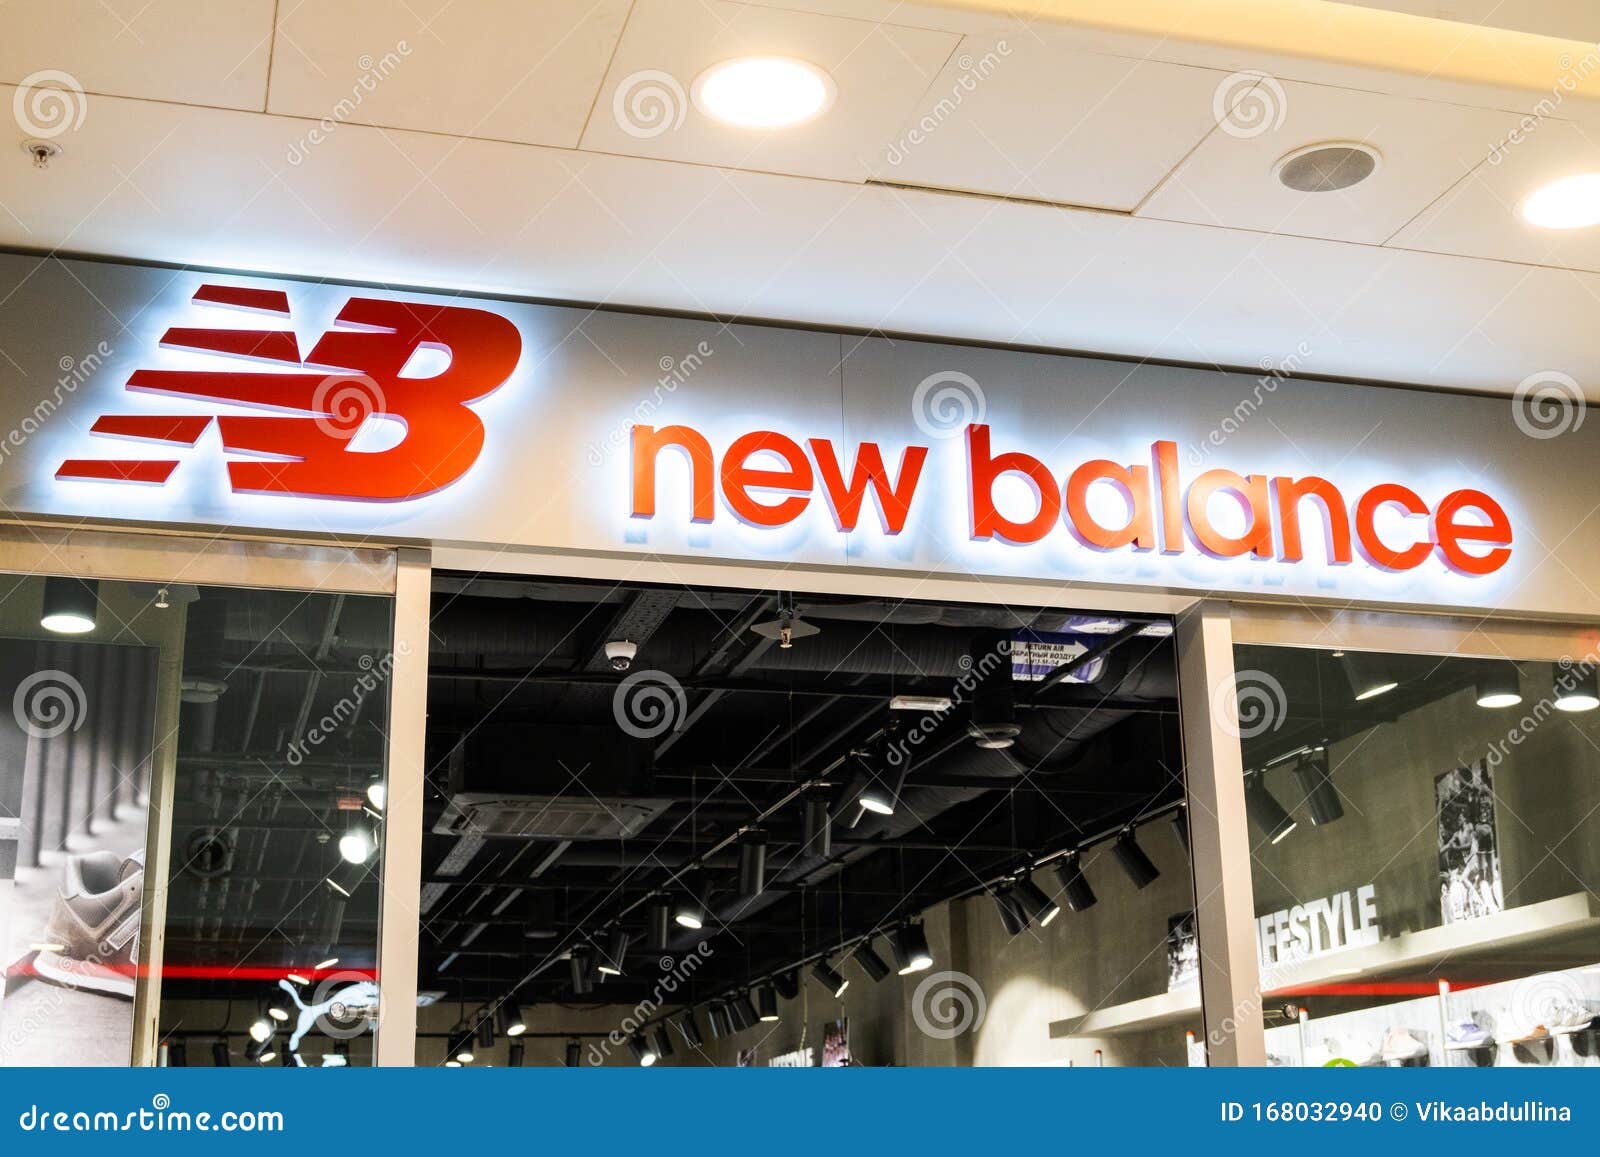 new balance store boston